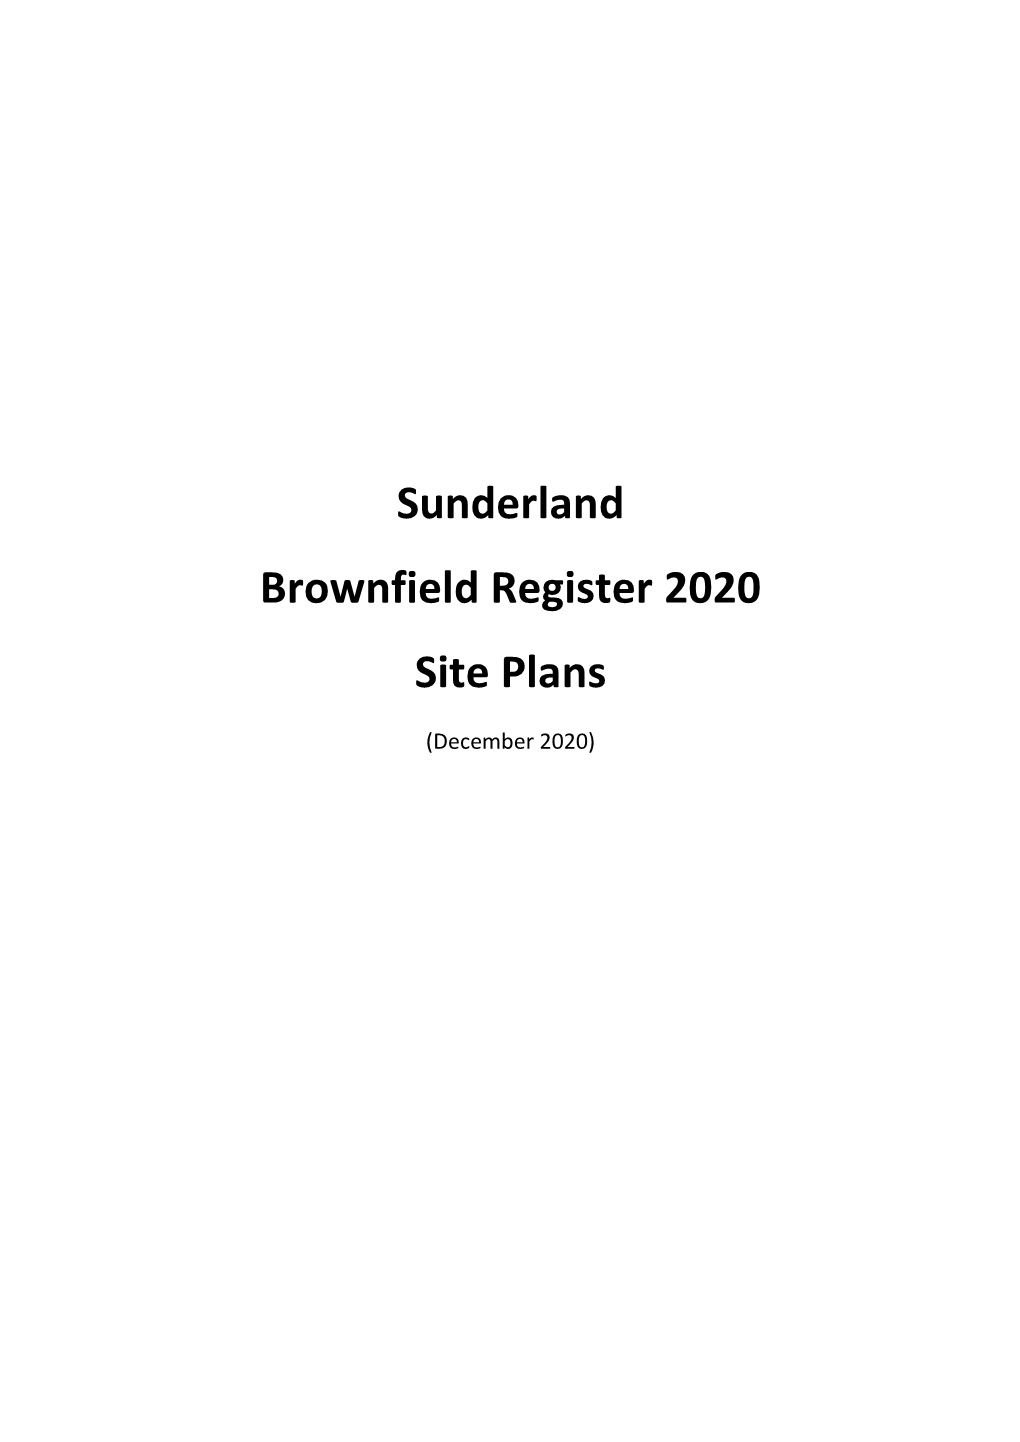 Sunderland Brownfield Register 2020 Site Plans